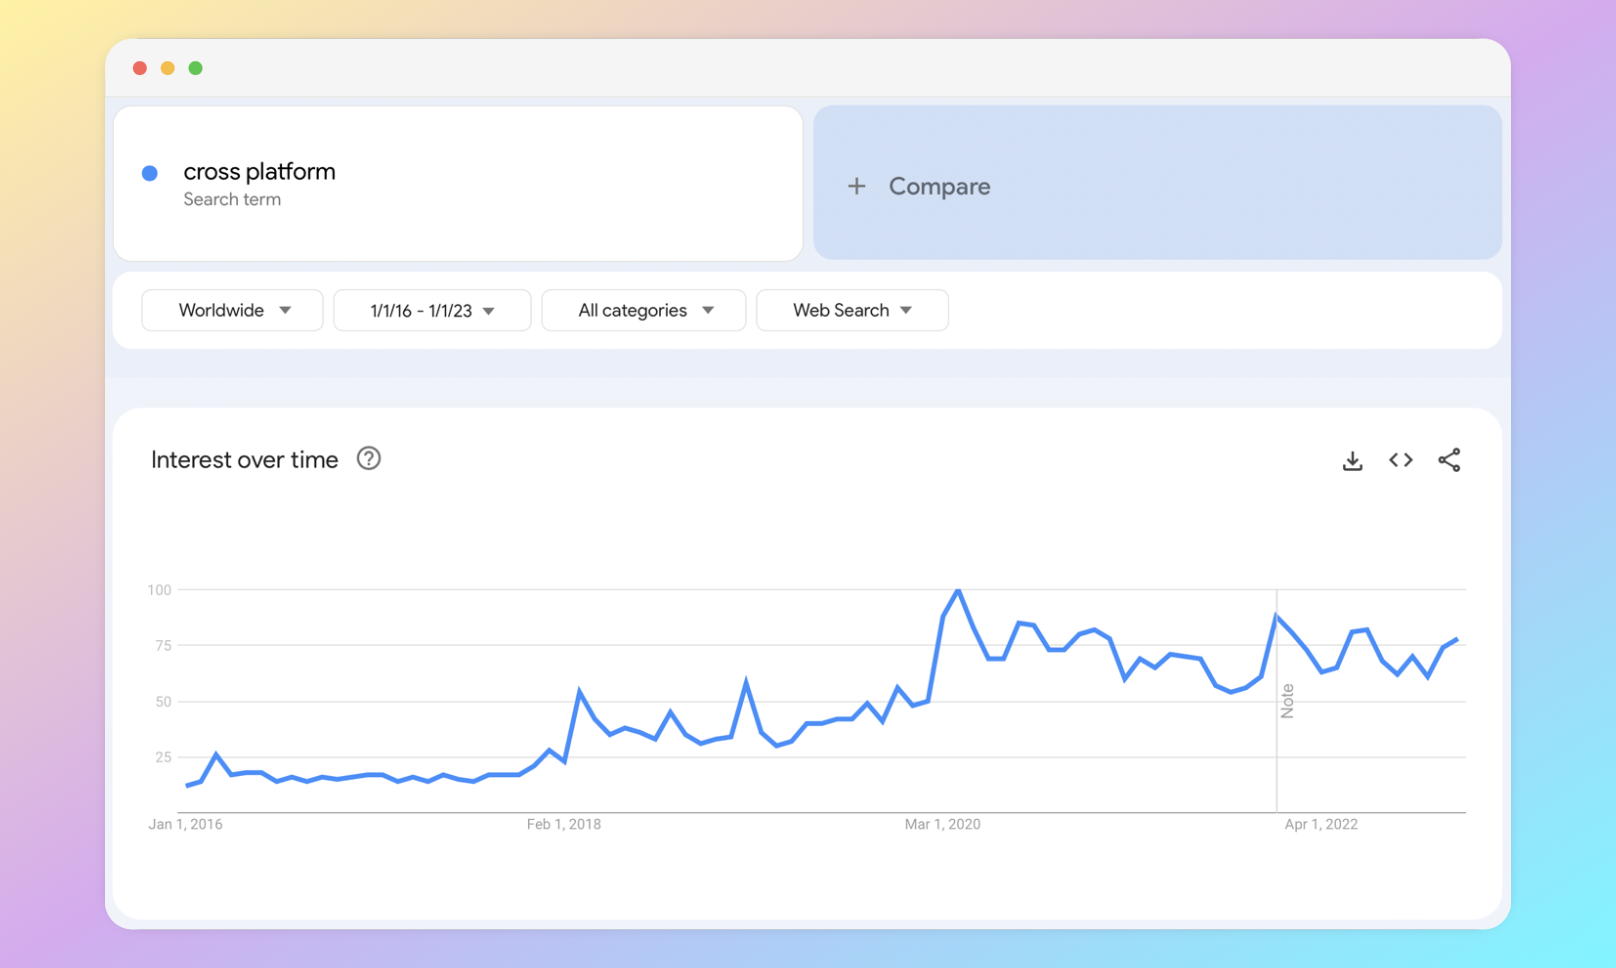 Cross-platform in Google Trends